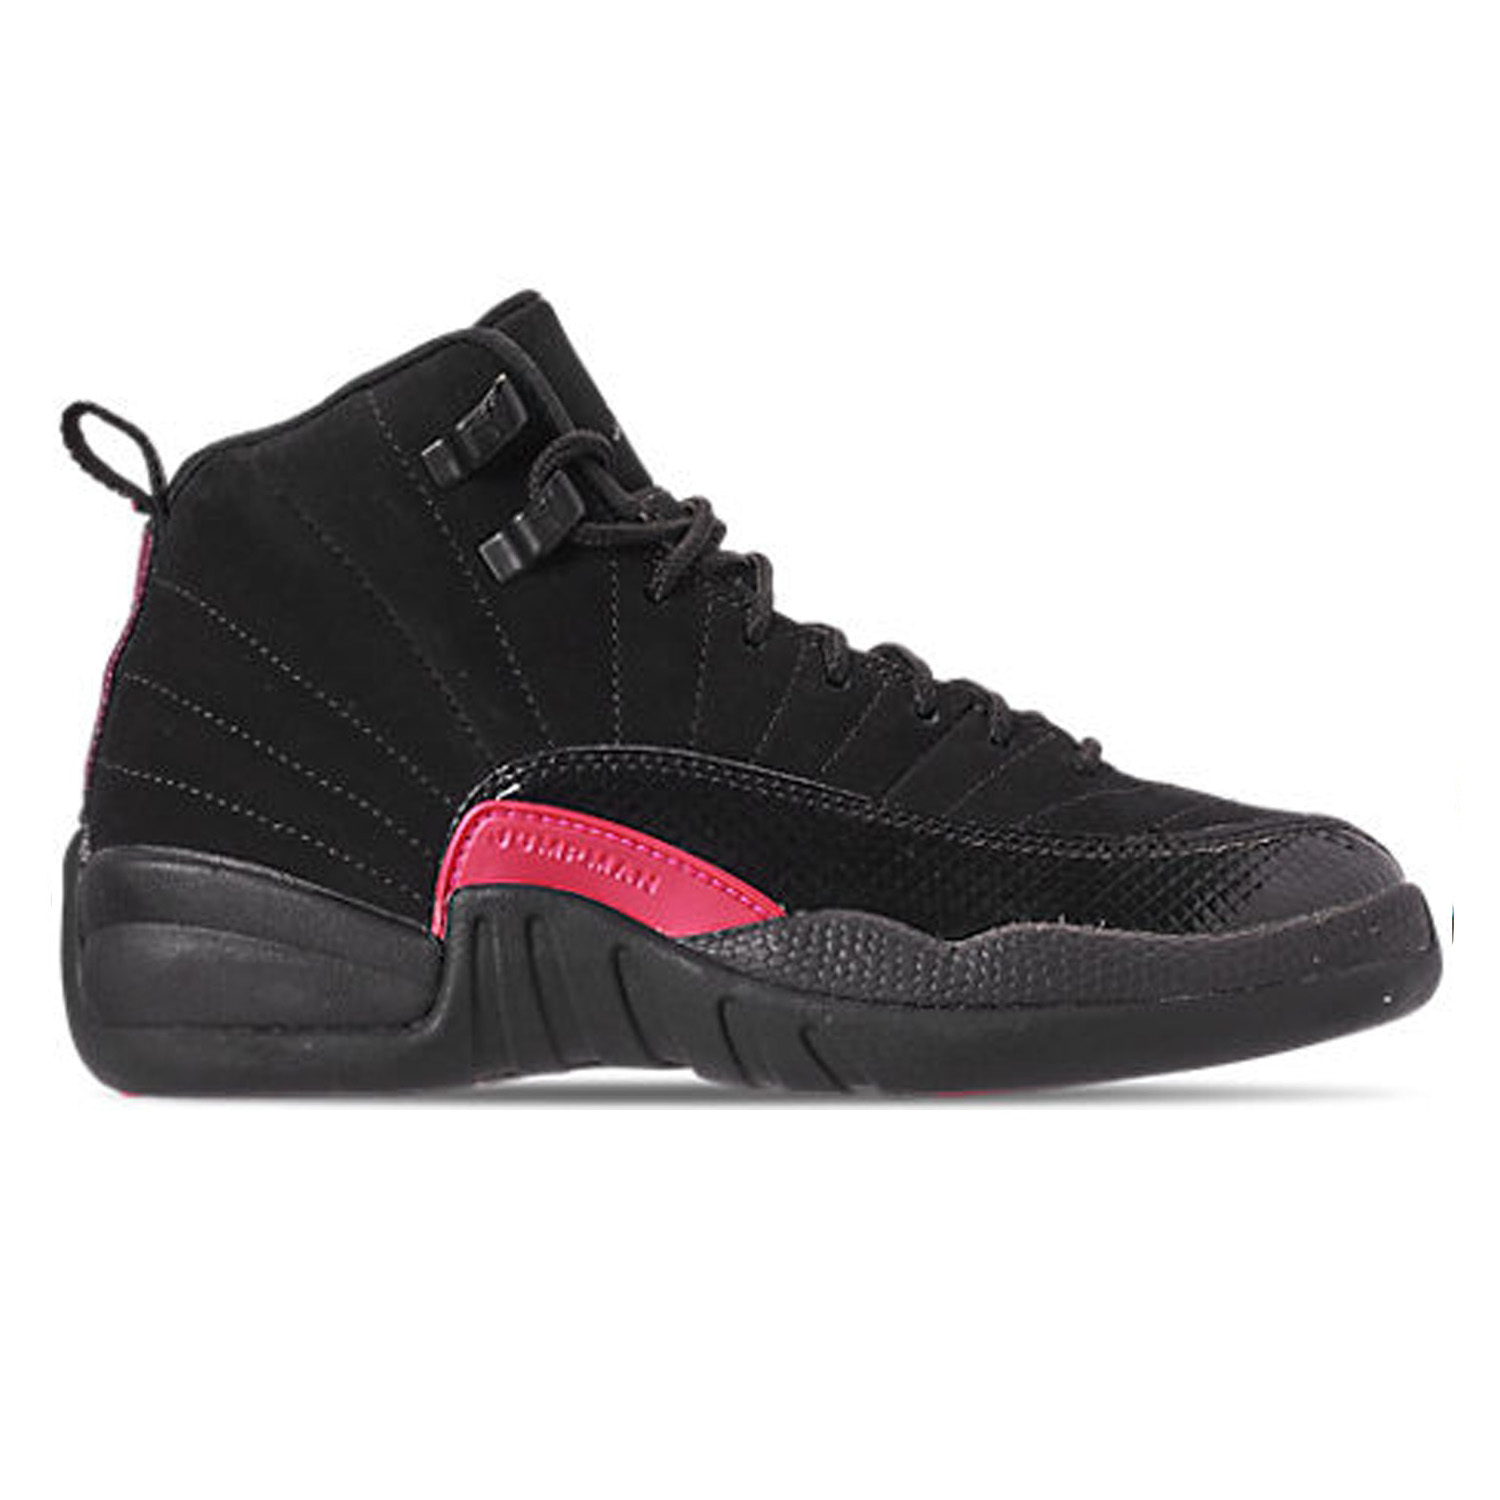 [해외] 나이키 에어조던 12 블랙핑크 GG Nike Air Jordan 12 Retro Black Pink GG 510815-006